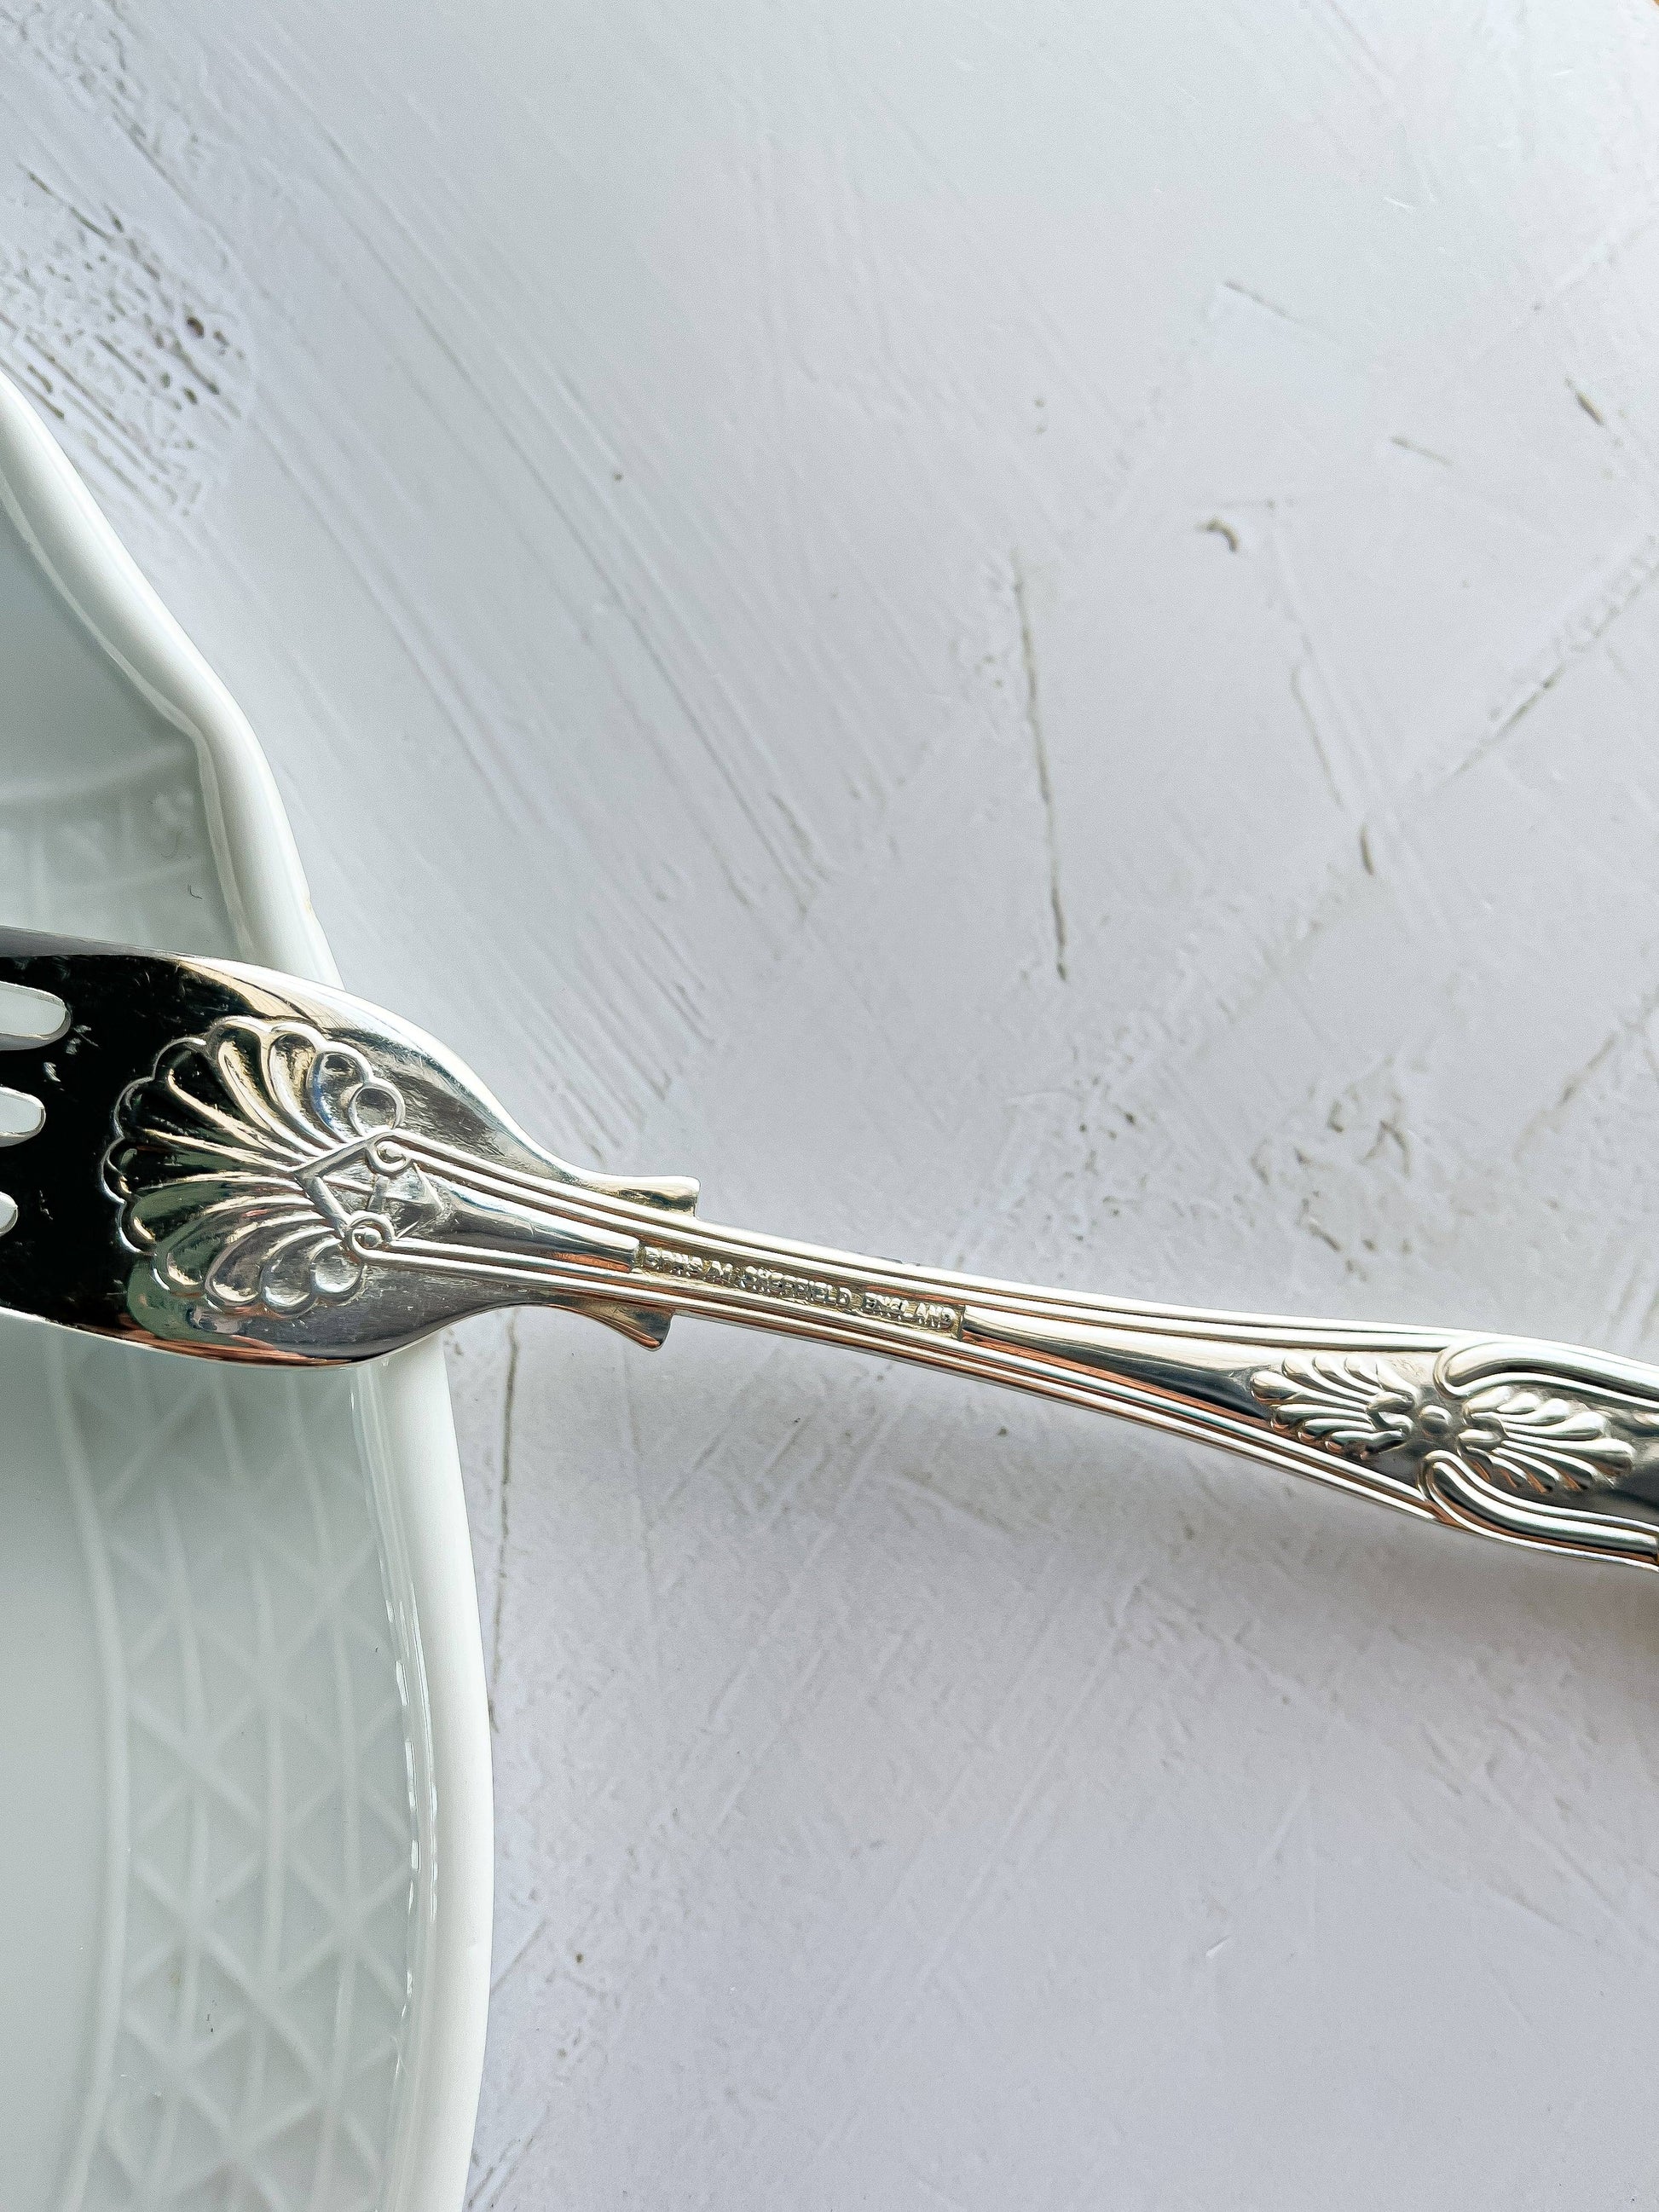 Sheffield Cutlery Co. Set of 6 Dinner Forks - ‘Kings’ Pattern - SOSC Home